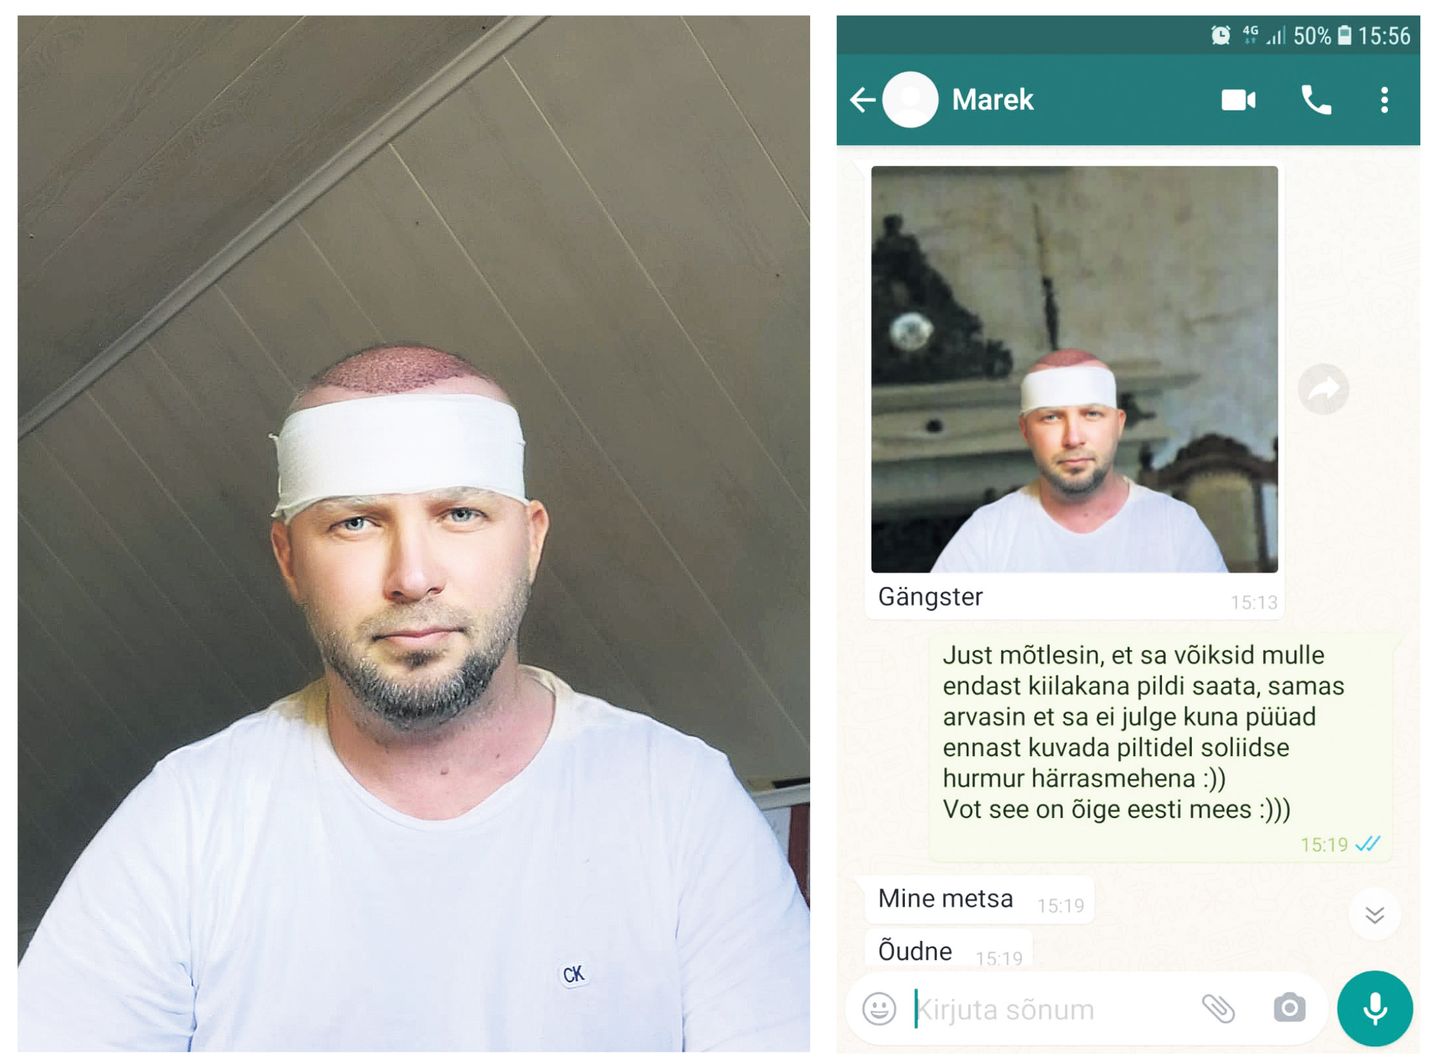 Марек Тамм отправил "другу" фото, что он якобы находится в частной больнице в Швеции "на операции по удалению родимого пятна". На самом деле снимок был сделано в доме его матери на мансардном этаже.